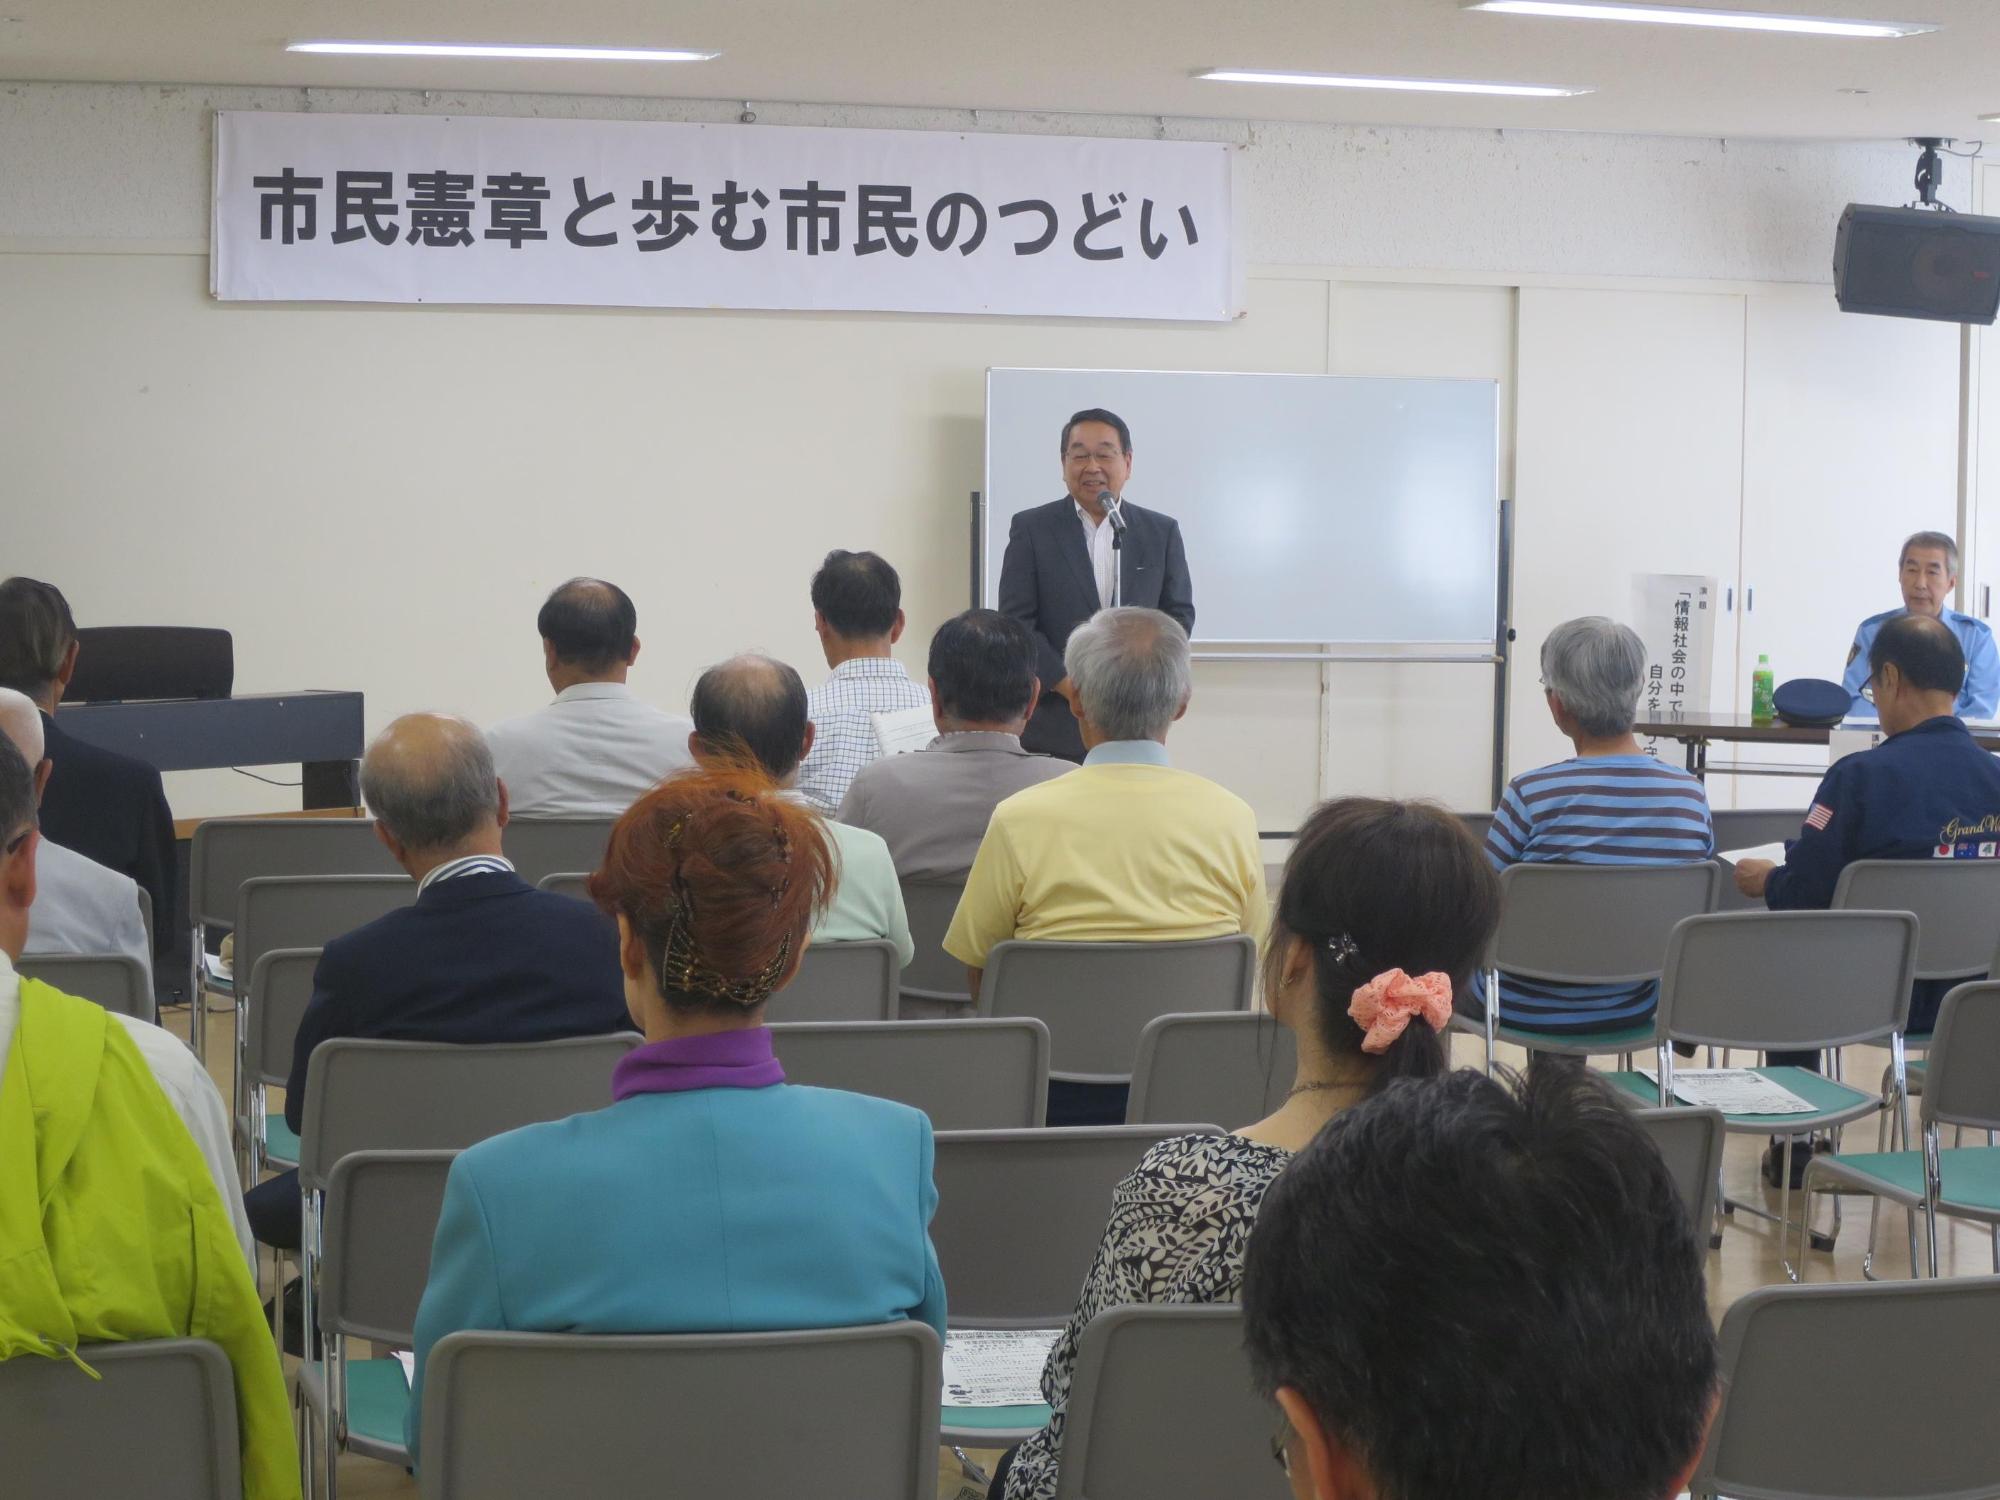 「市民憲章と歩む市民の集い」にて挨拶をしている原田市長の写真